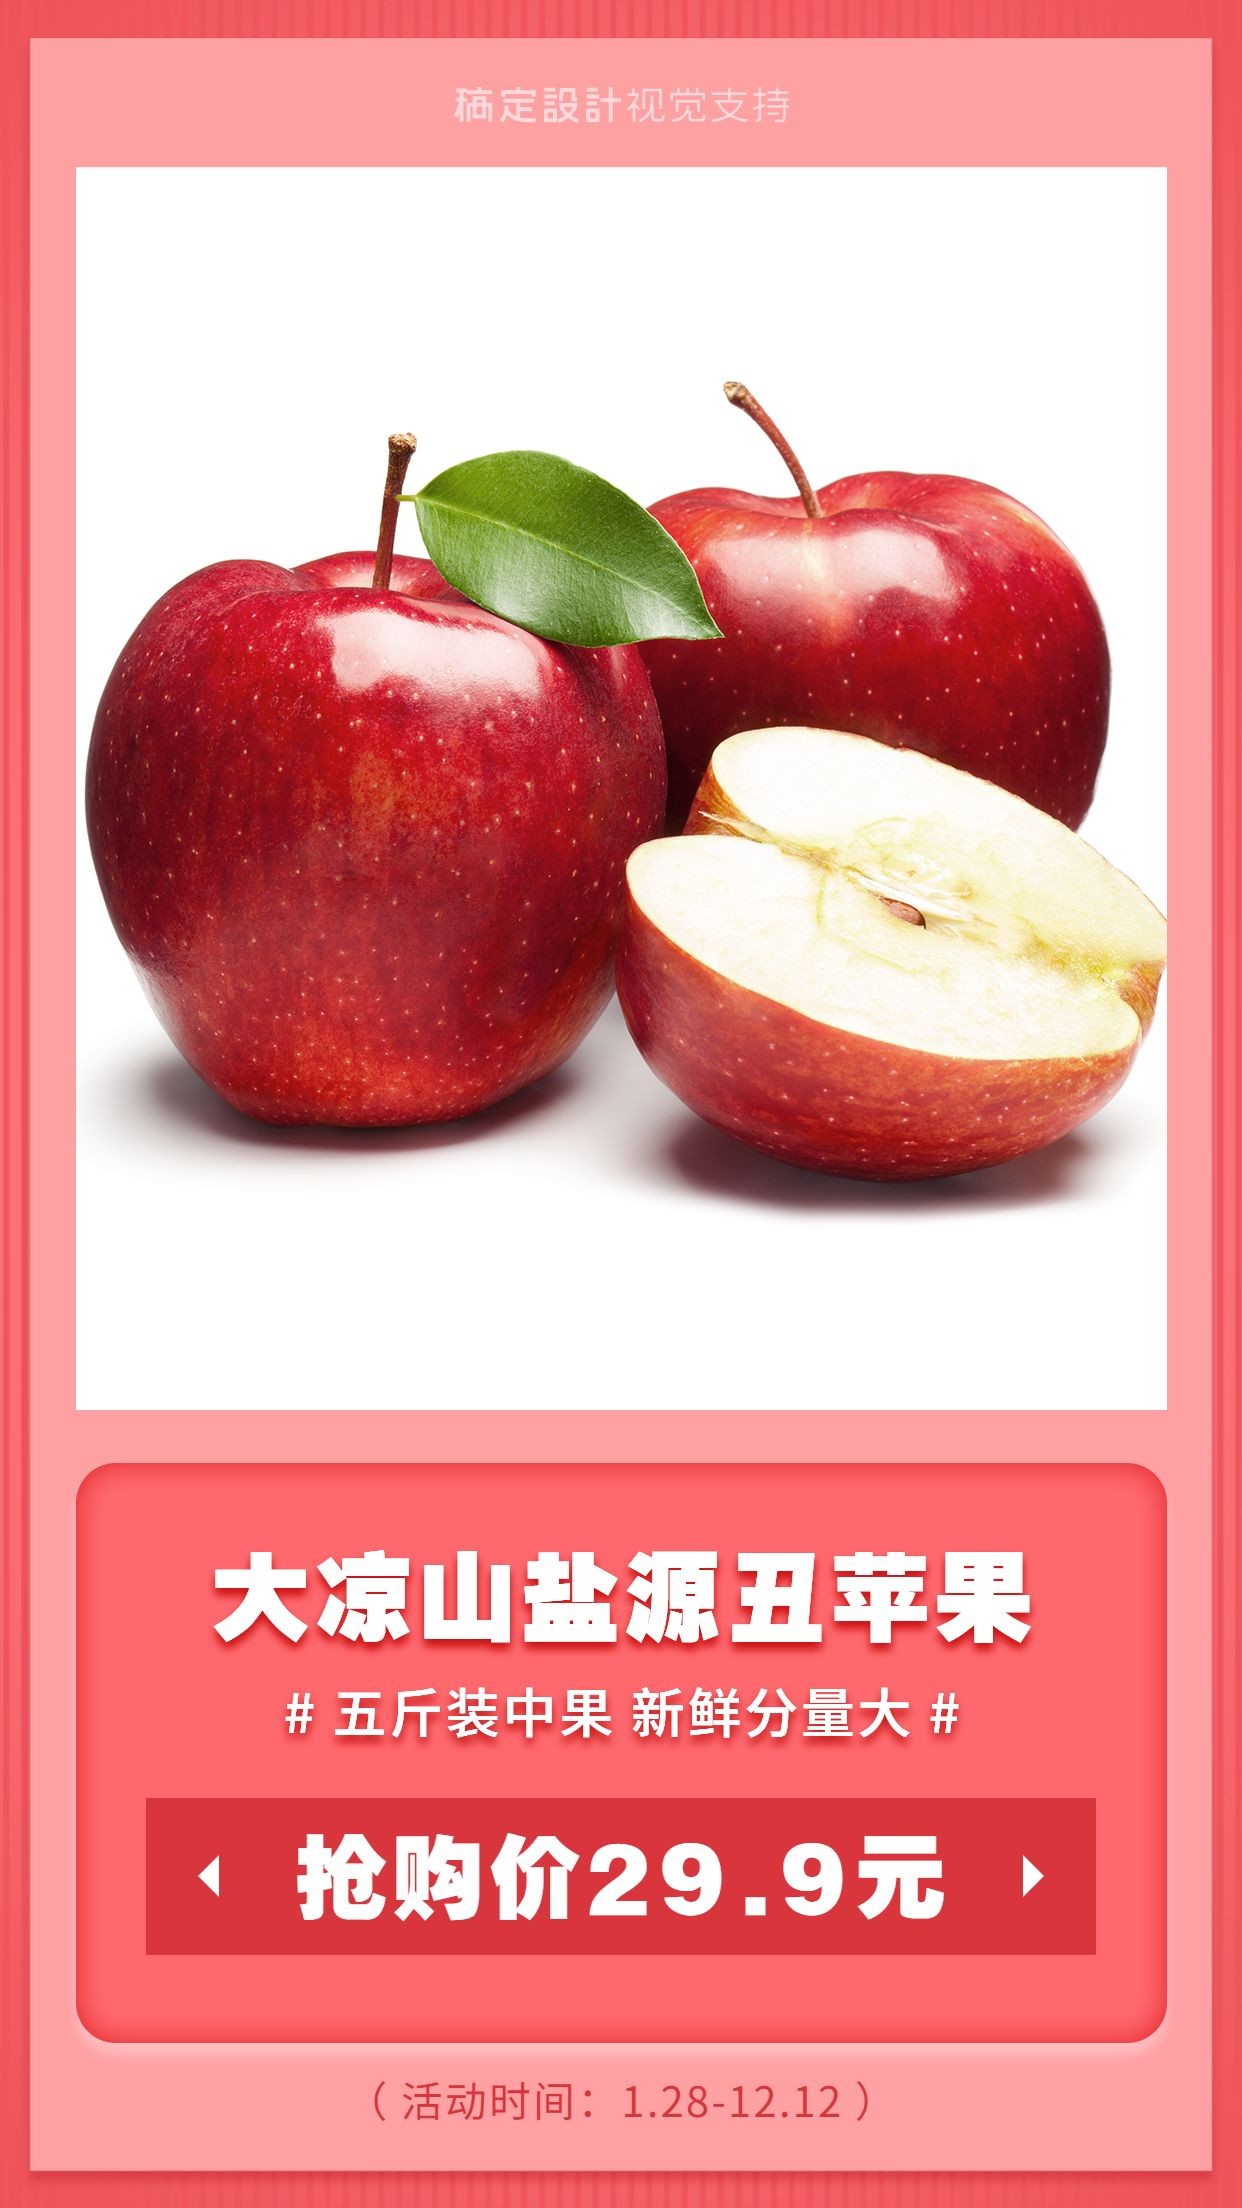 大凉山丑苹果卖货展示宣传海报预览效果